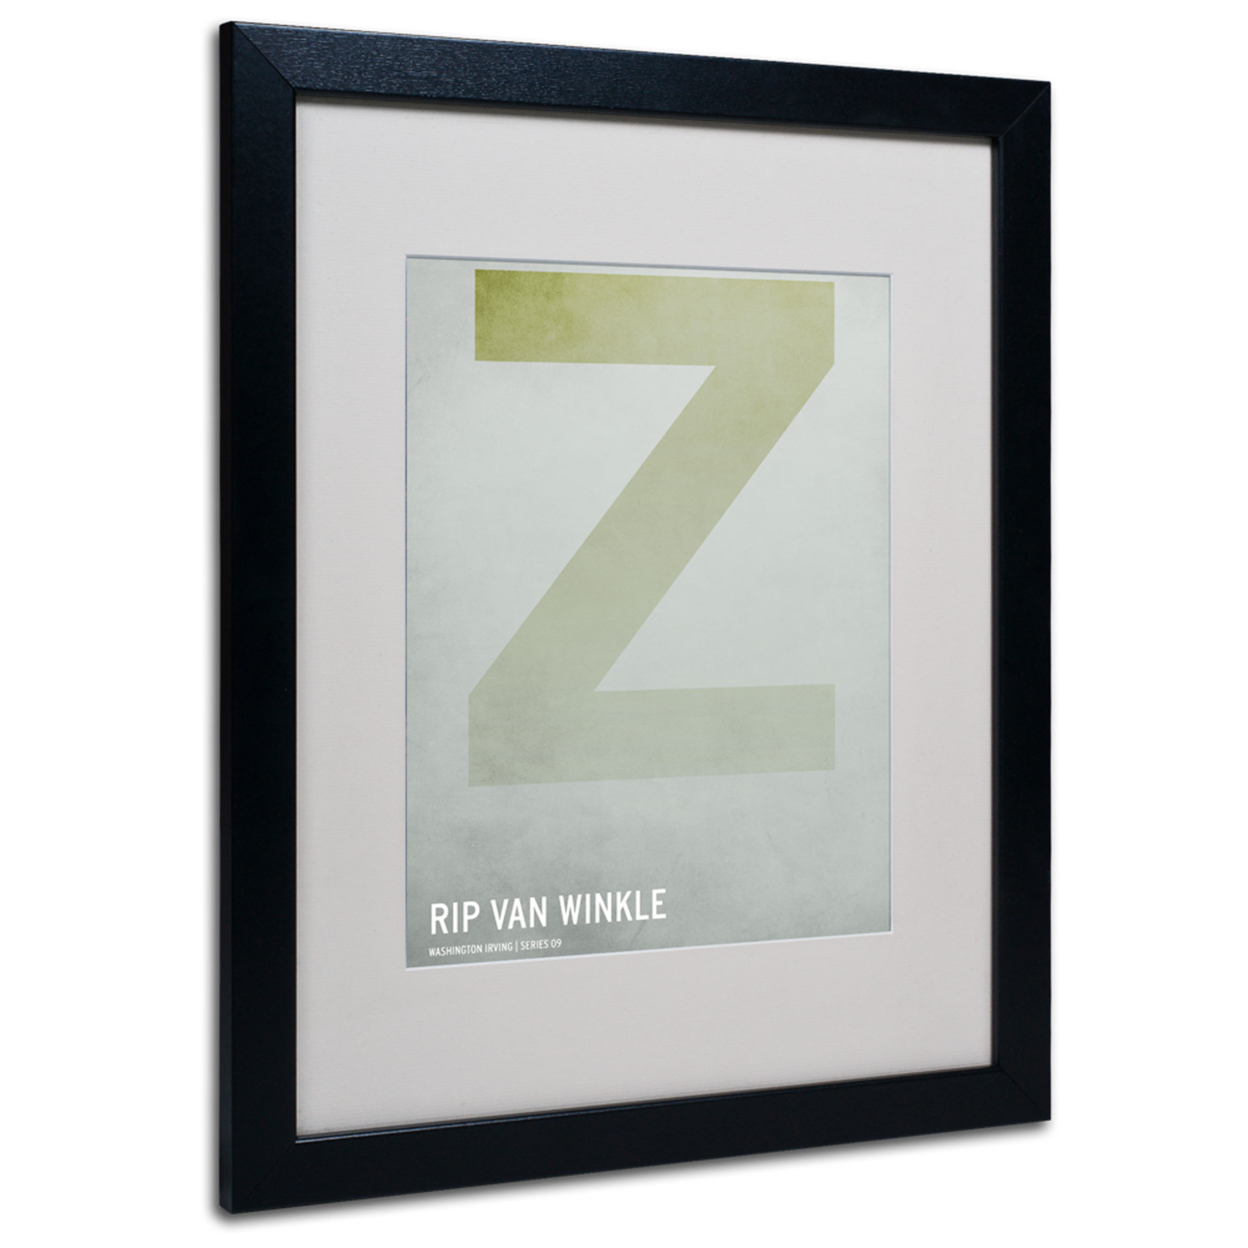 Christian Jackson 'Rip Van Winkle' Black Wooden Framed Art 18 X 22 Inches